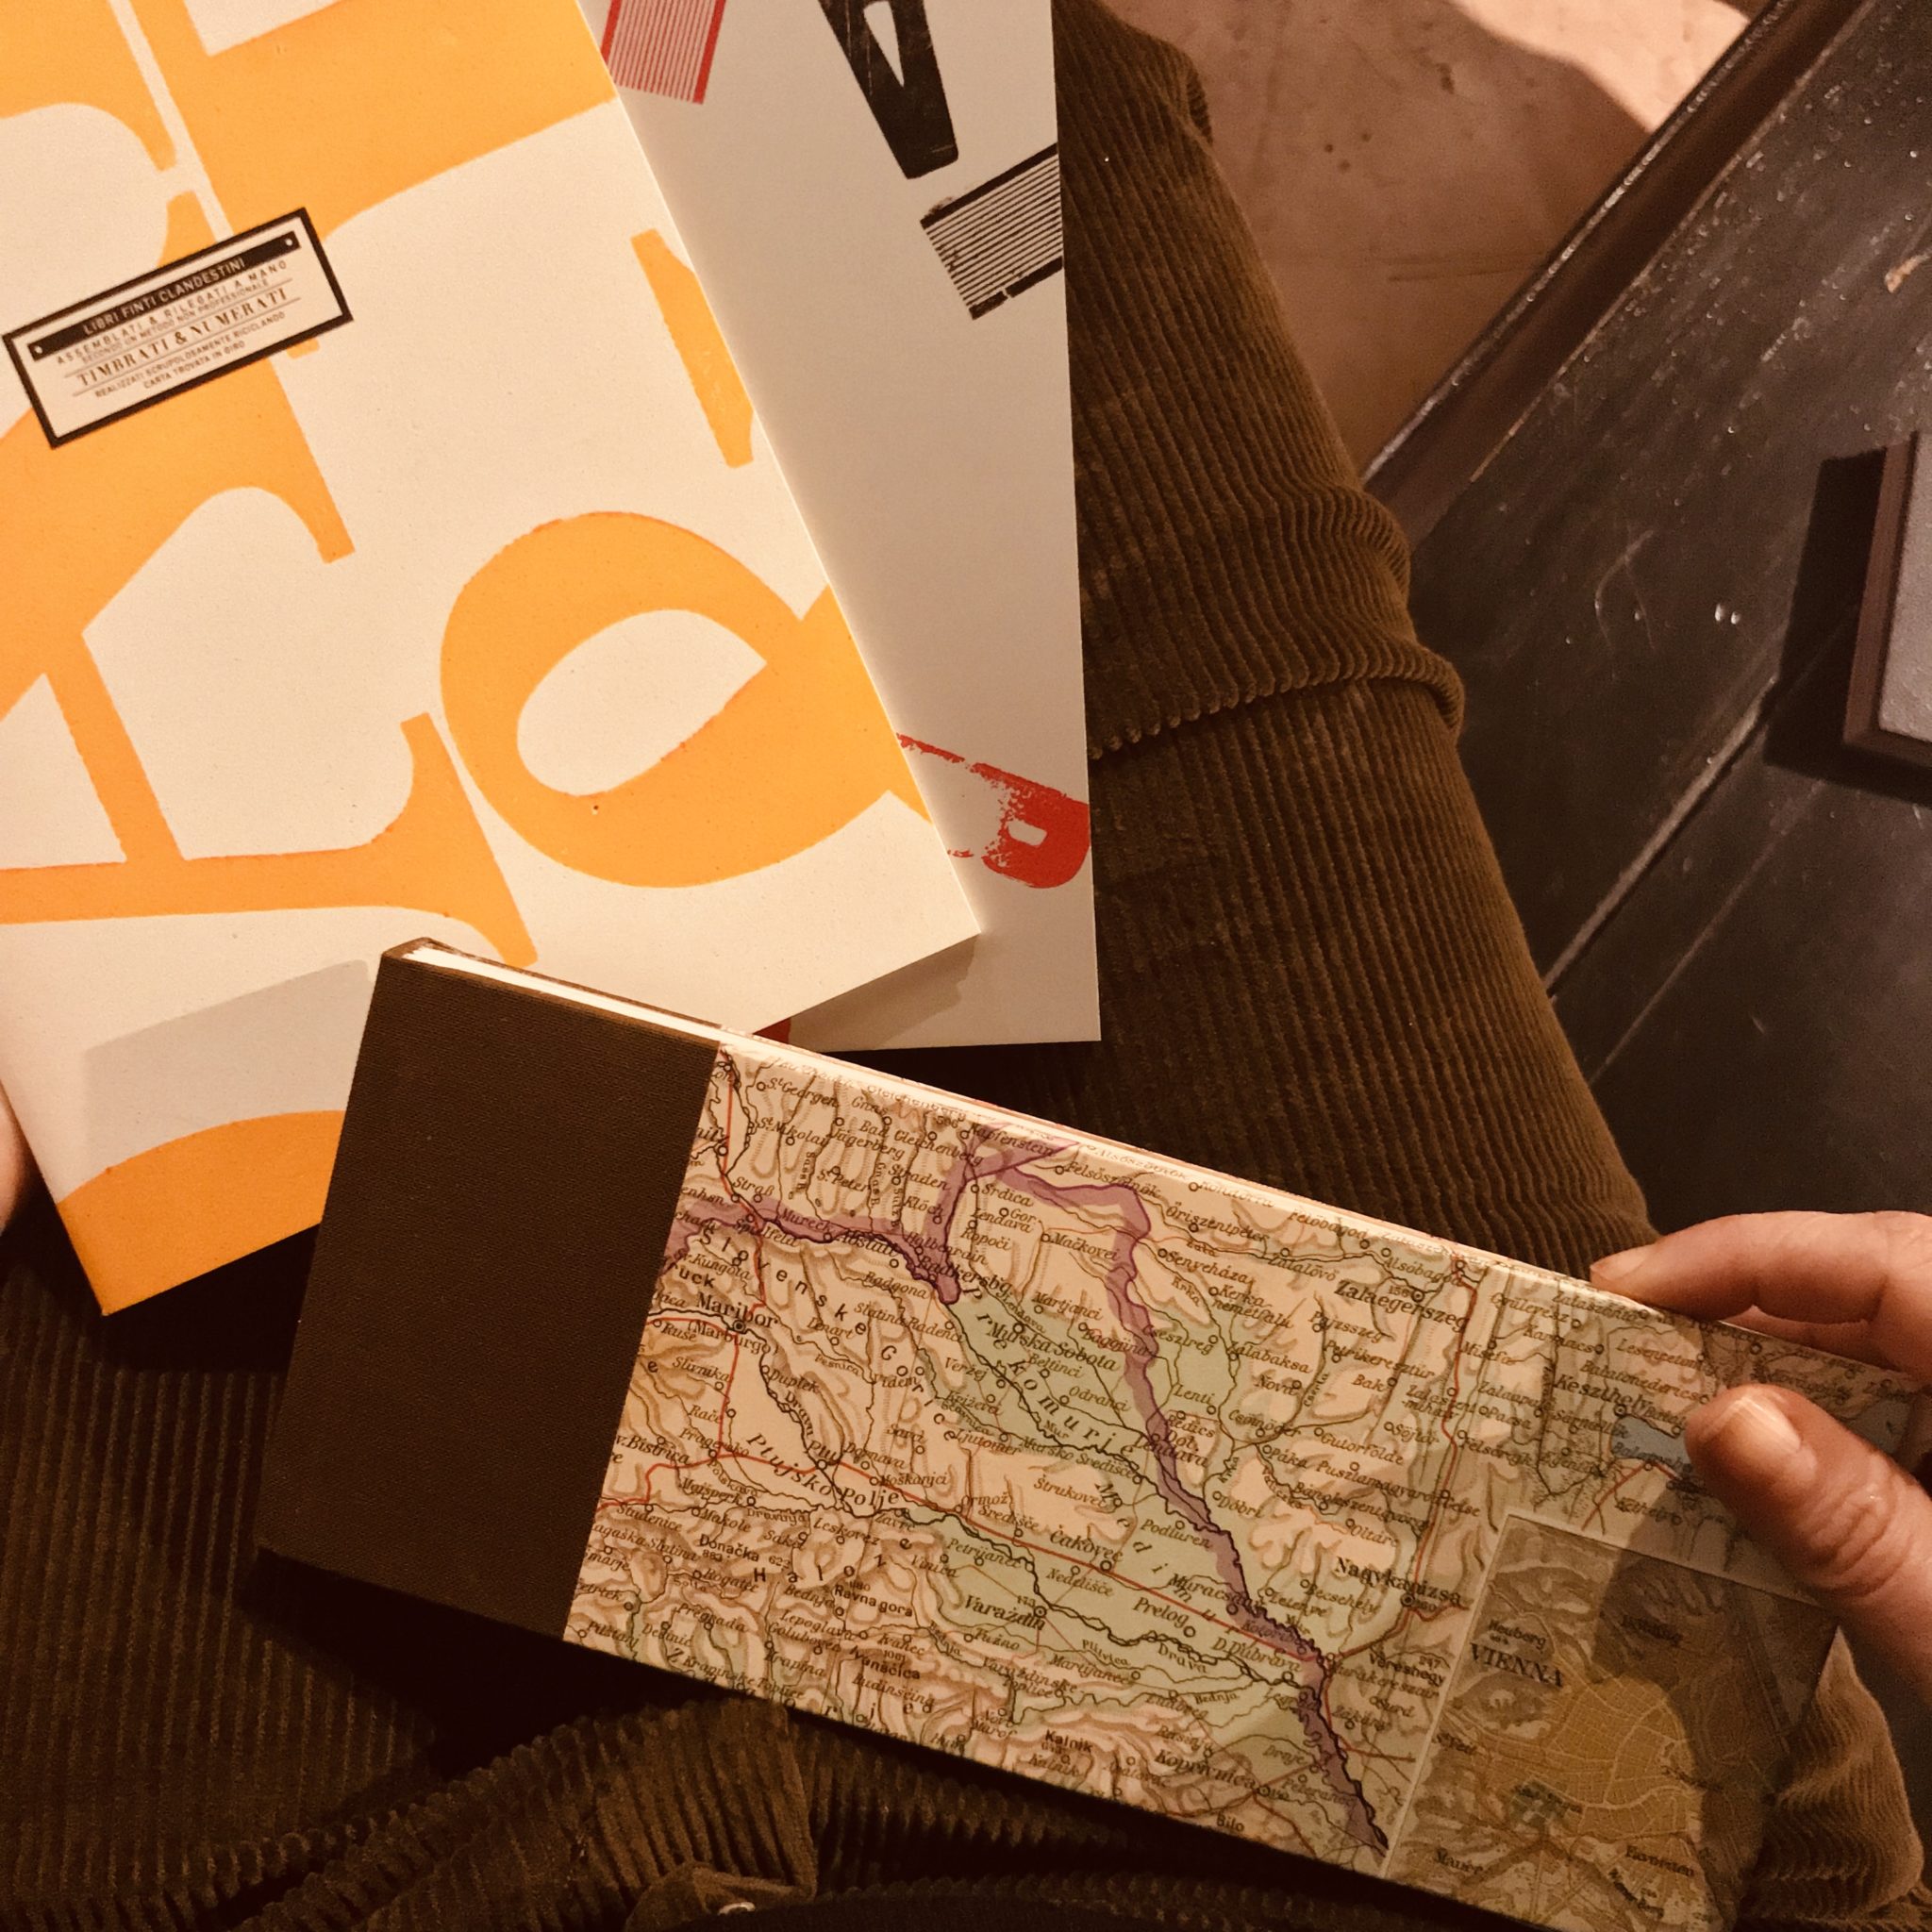 Il collettivo Libri Finti Clandestini recupera carta da riciclo, da scarti di tipografia a poster e sacchetti del pane, per farne libri d'arte